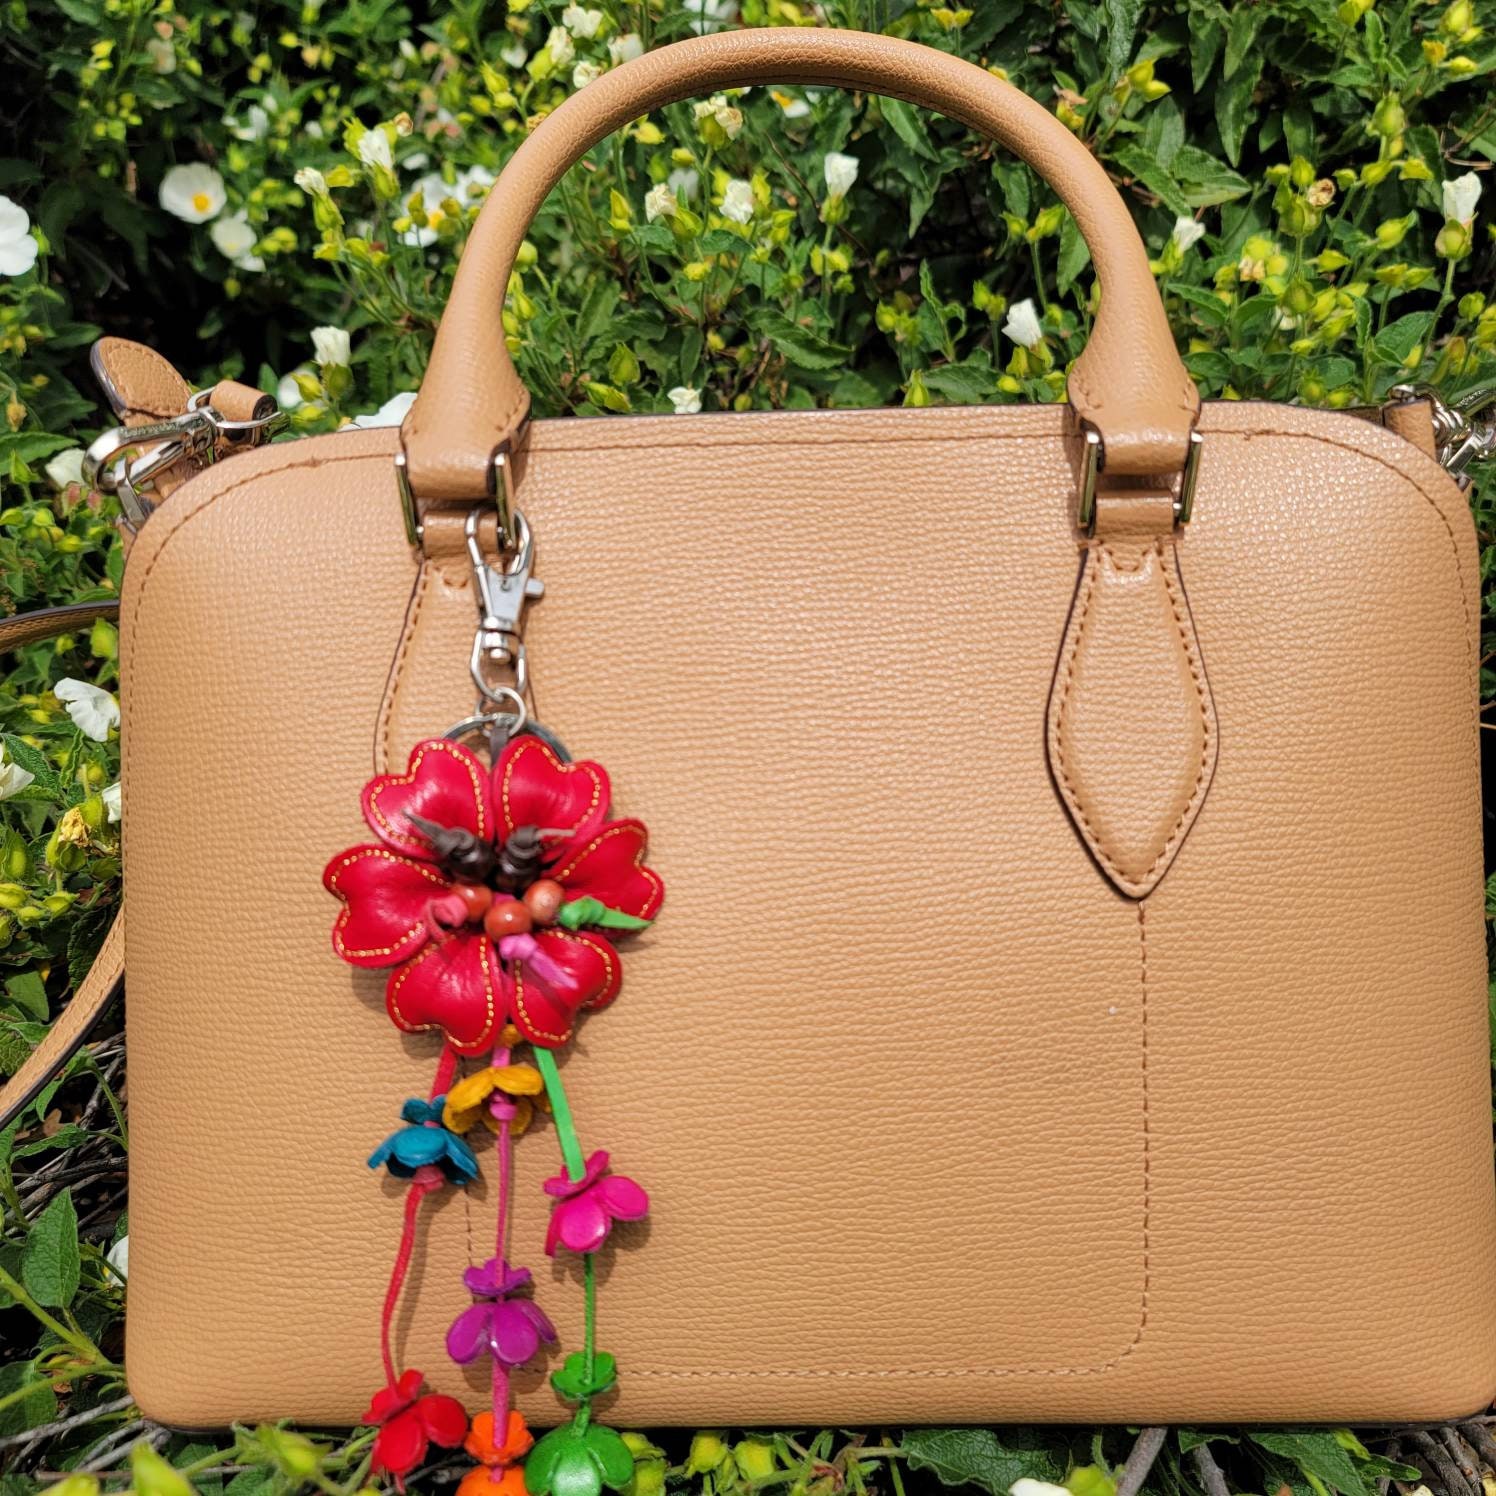 Tiffany & Co.® Flower Bag Charm in Tiffany Blue® Leather